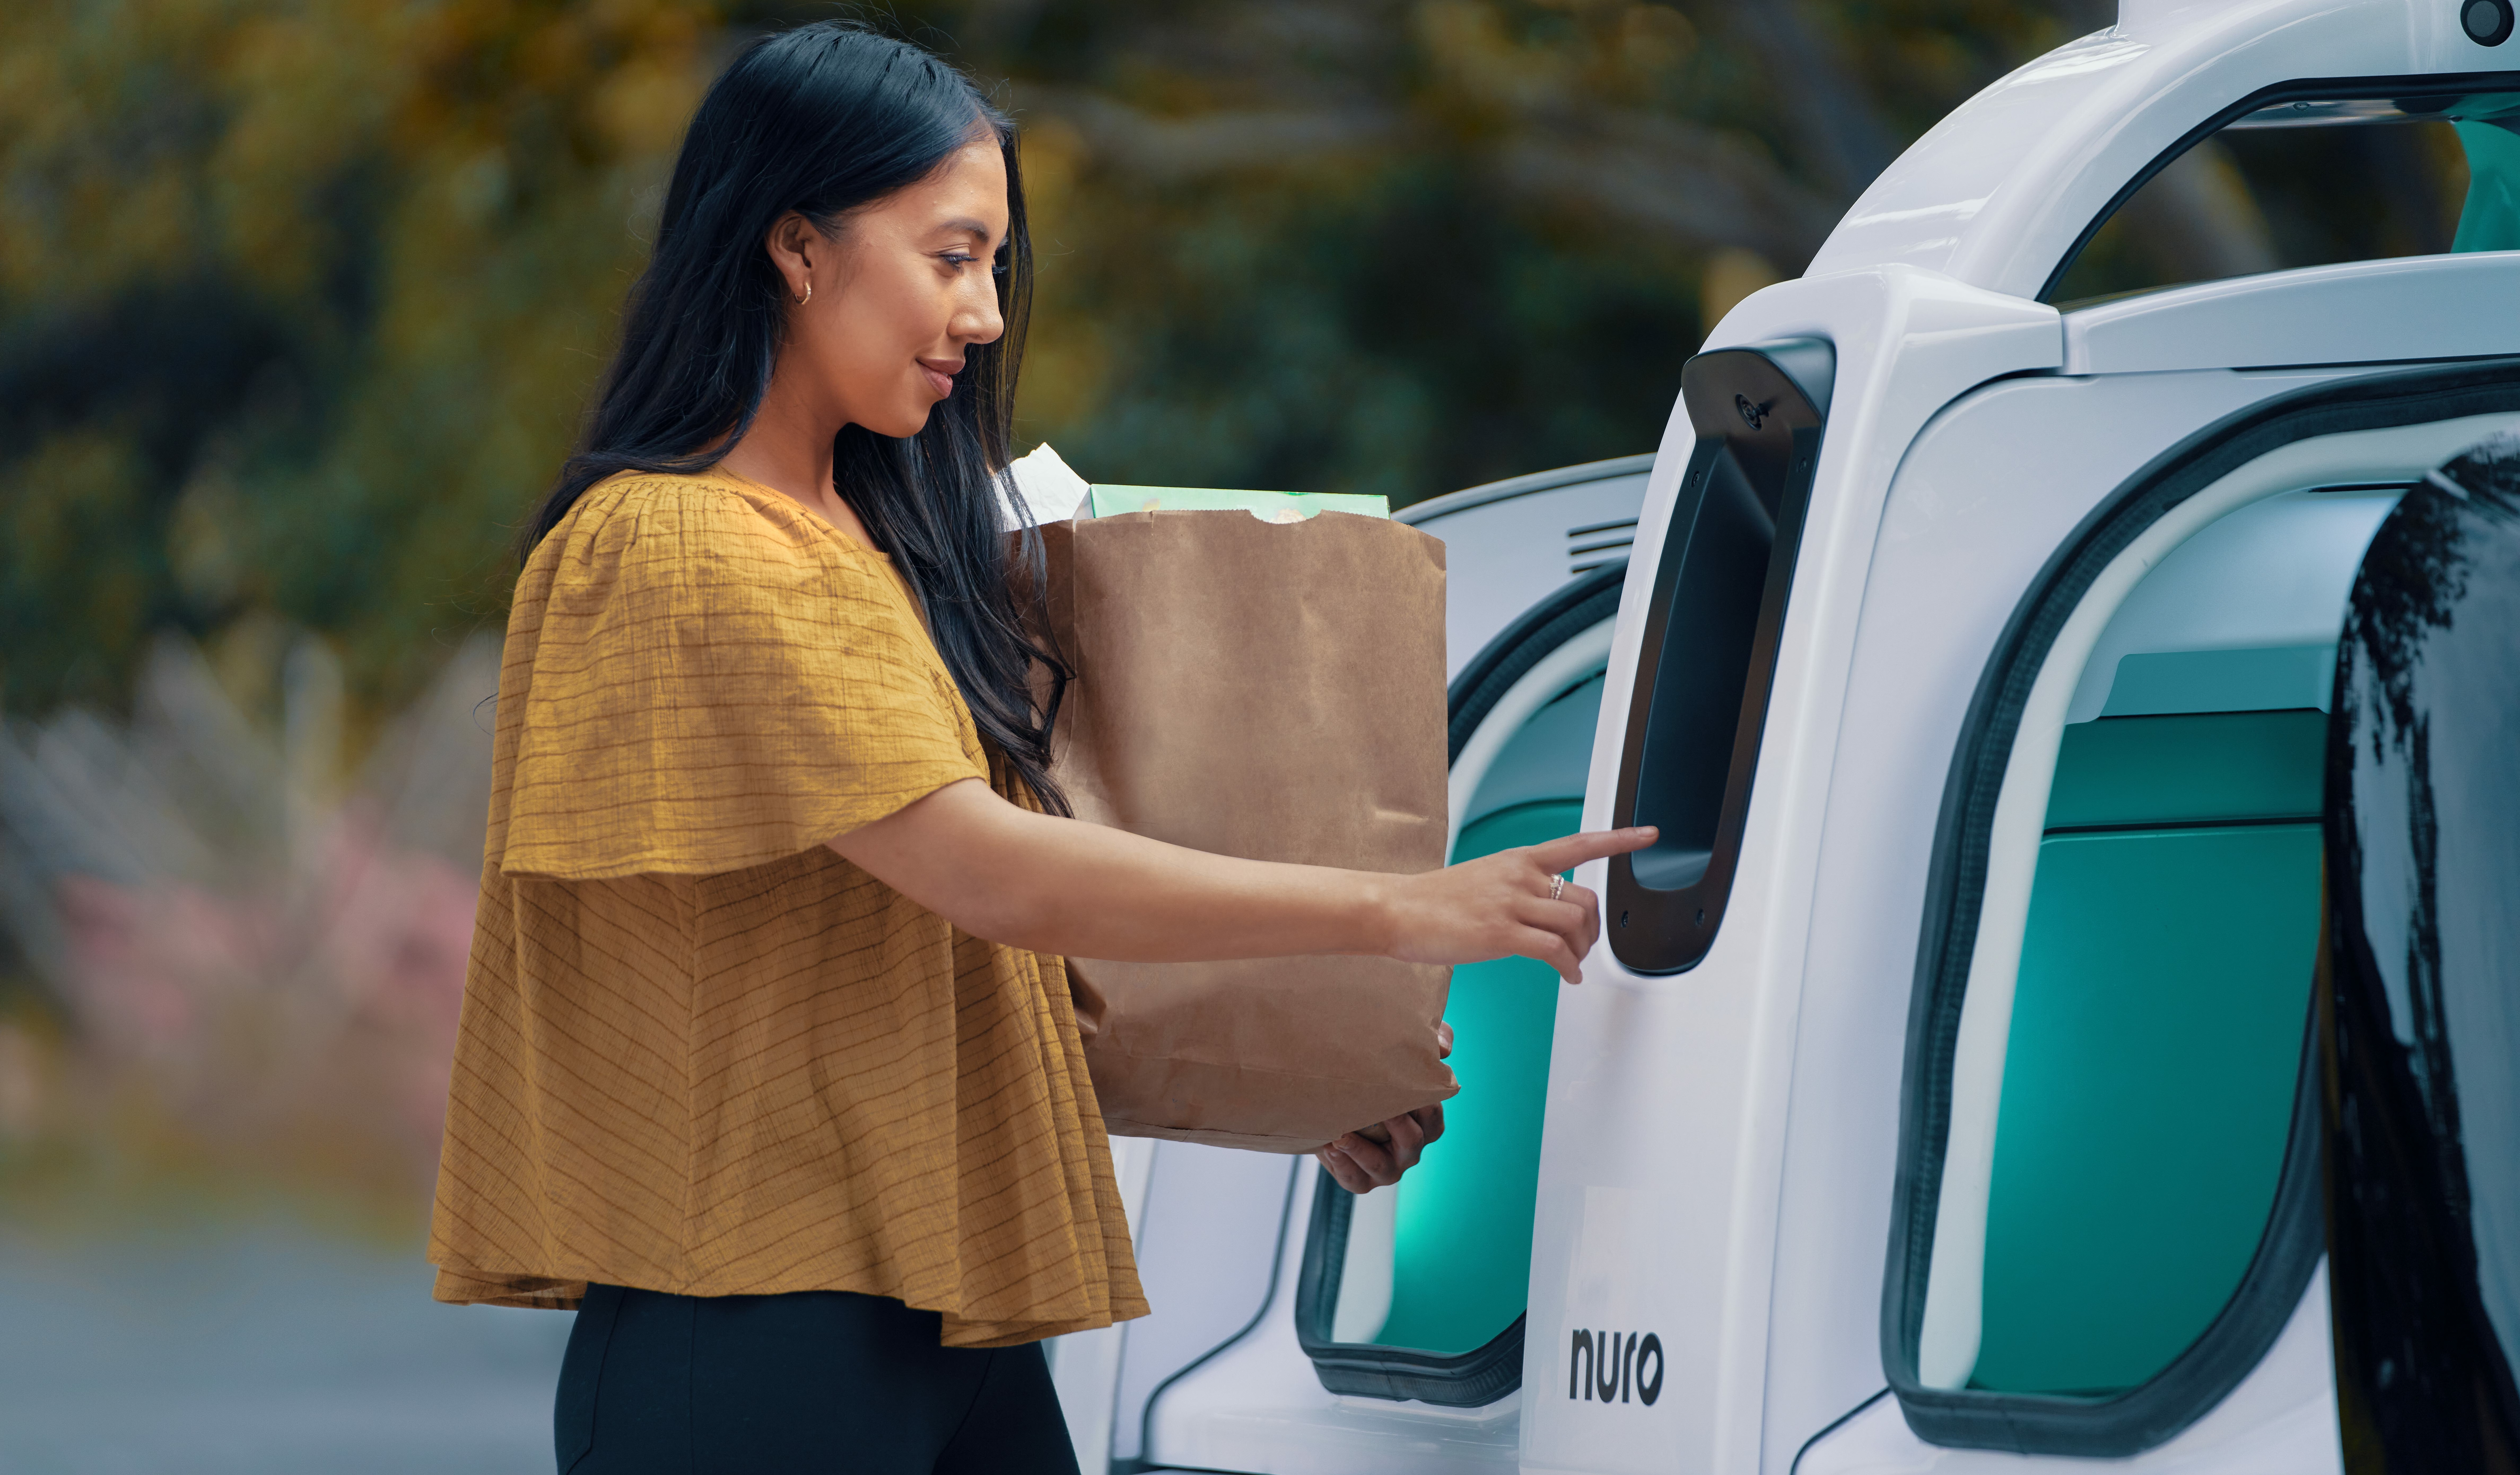 Delivery services set their sights on autonomous tech - Smartbrief